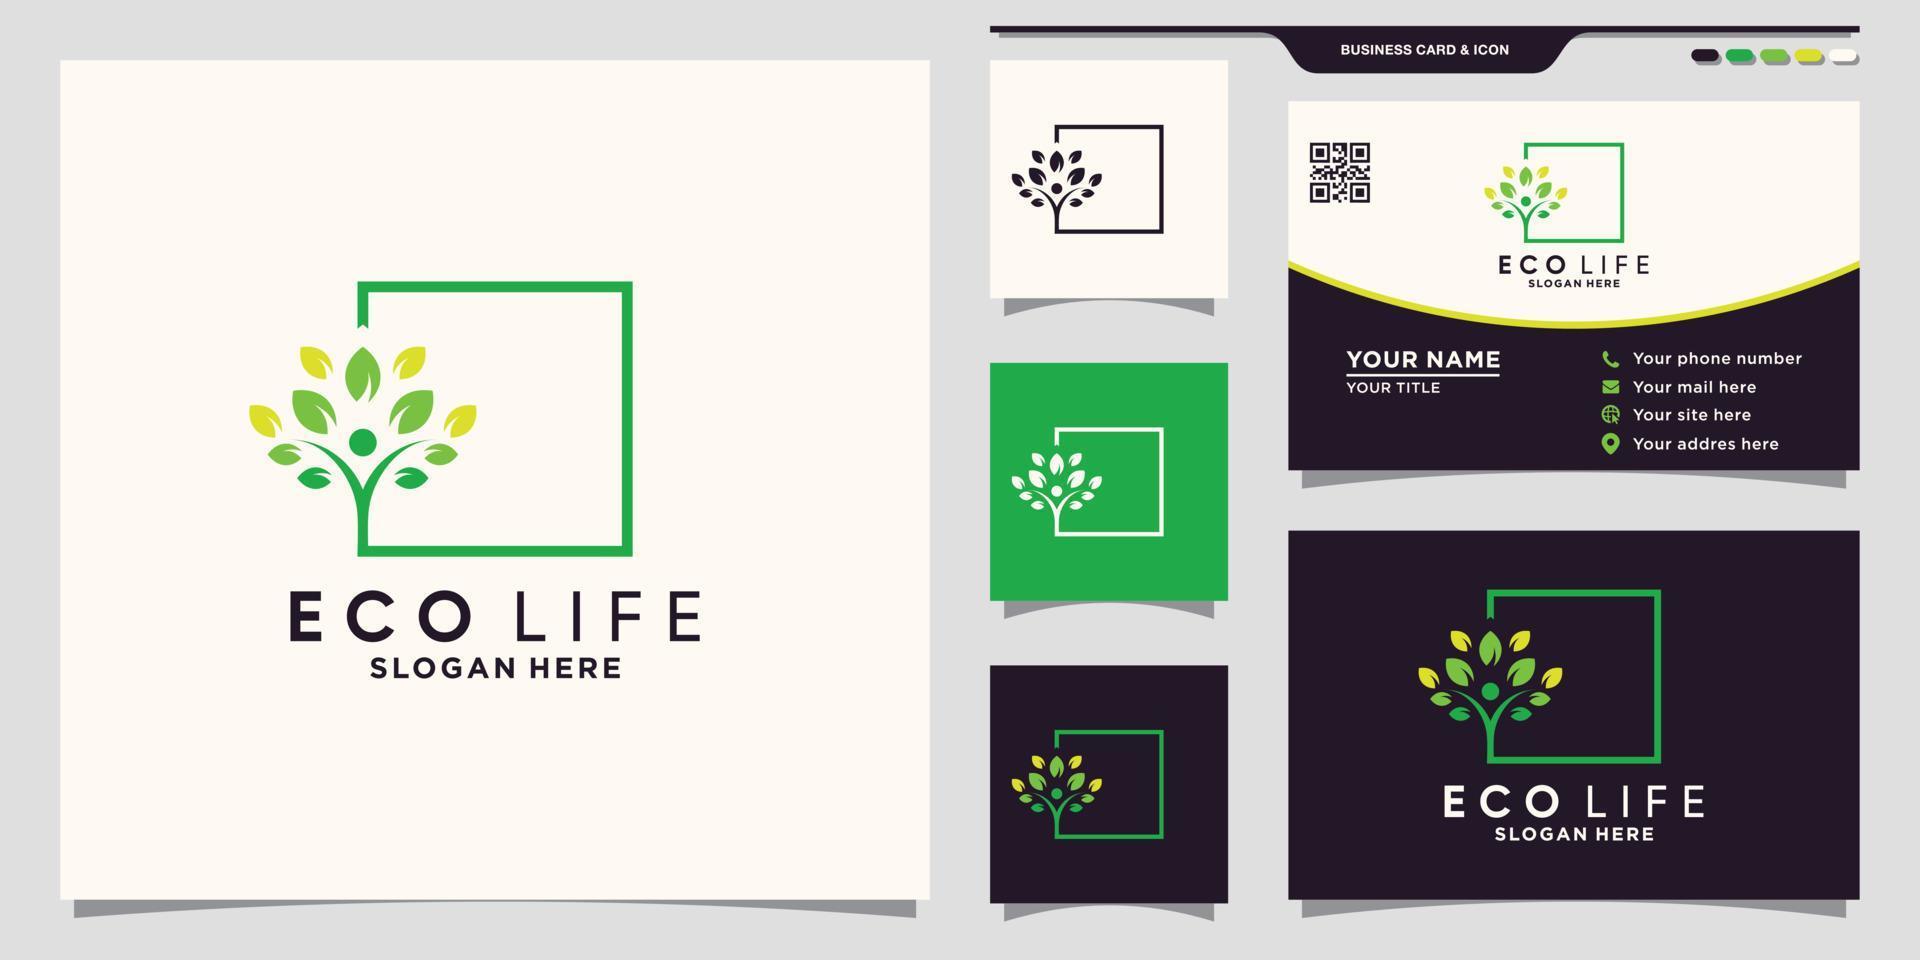 logo d'arbre de personnes eco life avec style d'art en ligne carrée et vecteur premium de conception de carte de visite